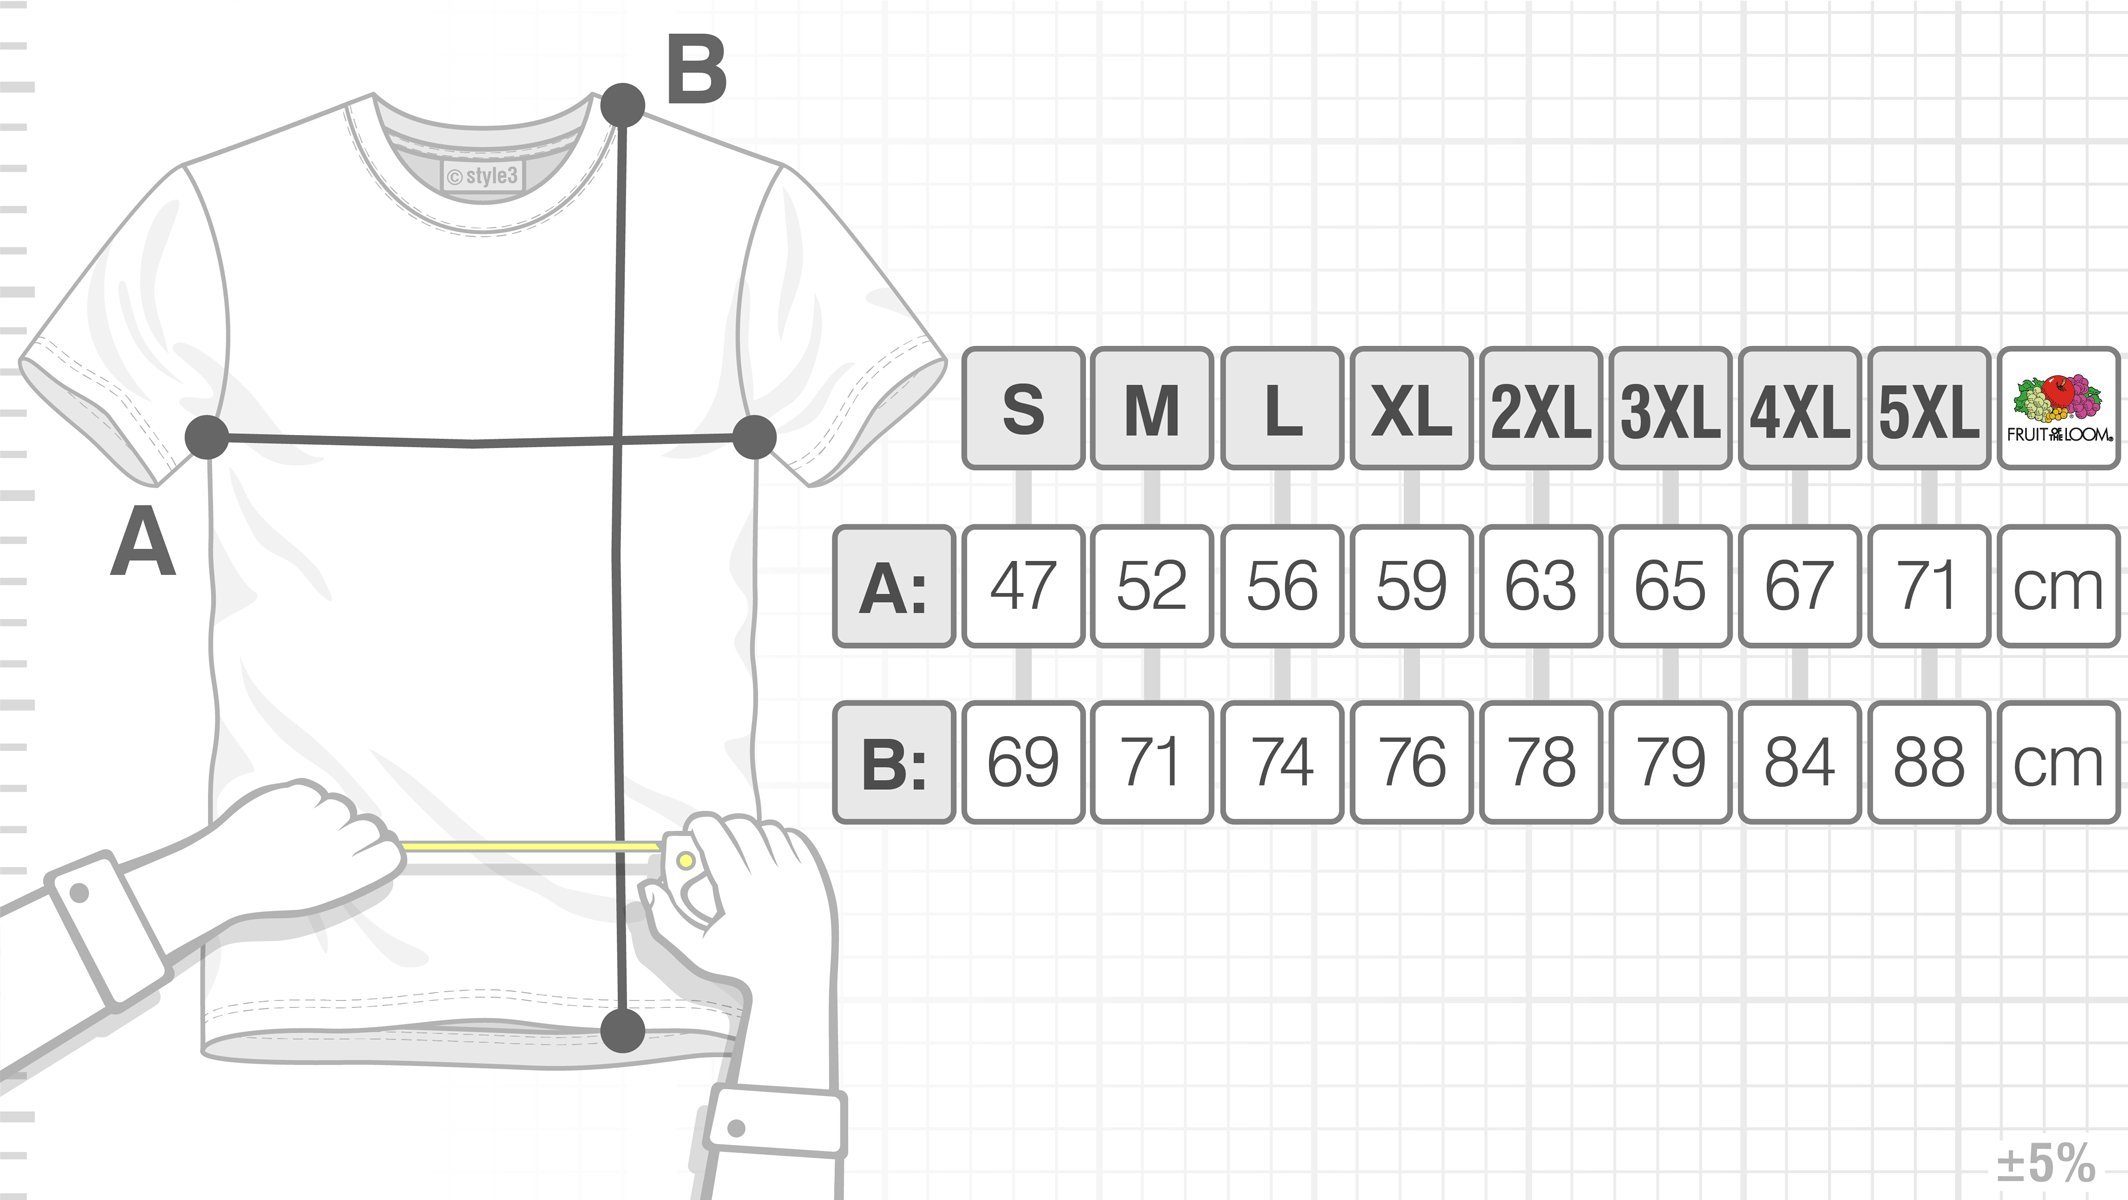 Theory Herren style3 Print-Shirt Sheldon Color Cooper schwarz Dreieck Bang T-Shirt Penrose Escher the Big